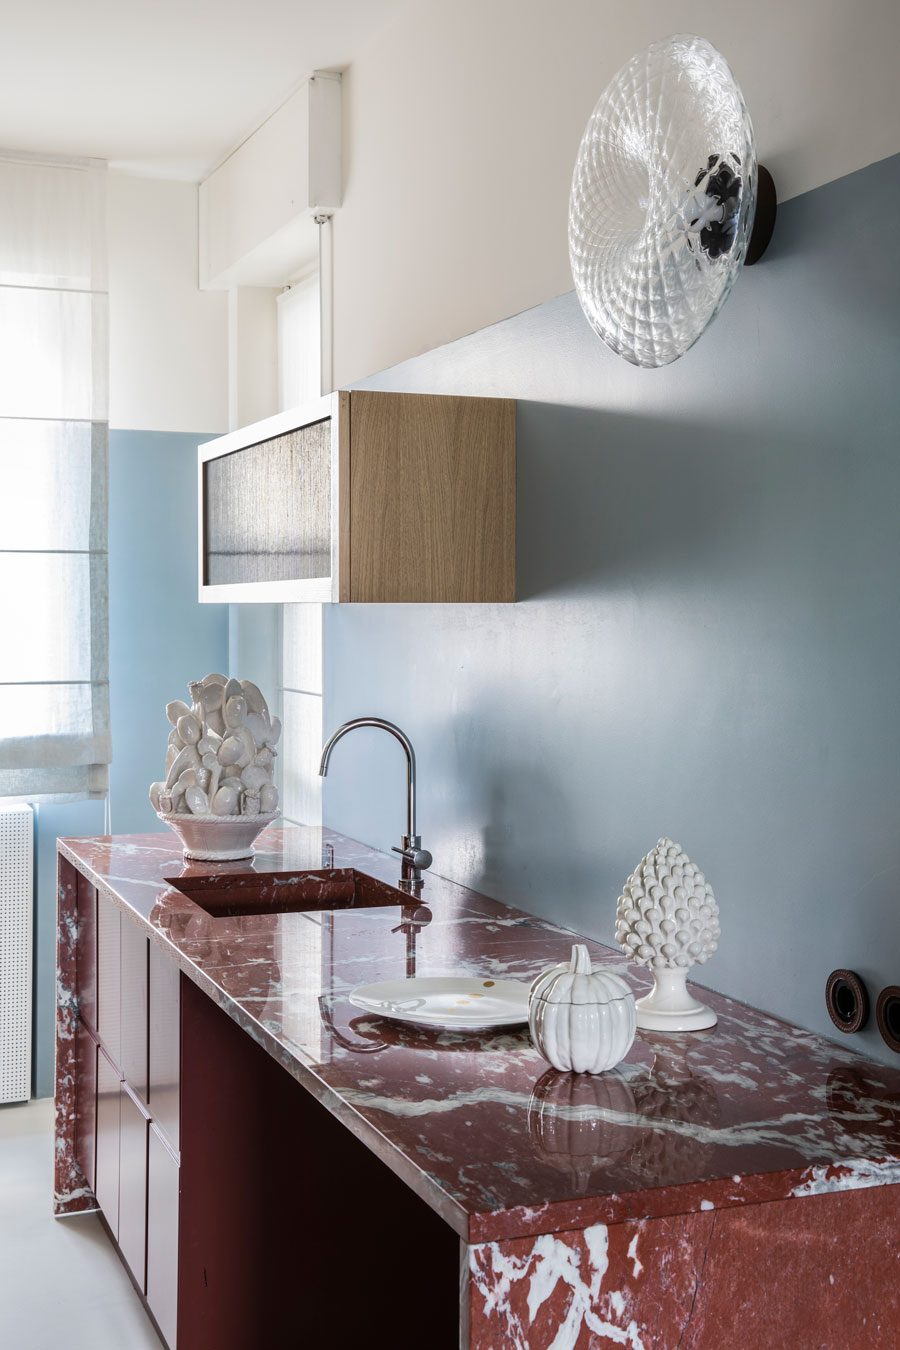 Phòng bếp trong căn hộ của Clara Ceccherini với mặt bếp làm bằng đá cẩm thạch đỏ của Pháp, mang đến vẻ đẹp nồng nàn, quyến rũ. Bên cạnh đó, sắc xanh lam nhạt của màu sơn tường trung hòa lại tạo nên sự dễ chịu cho không gian nấu nướng.